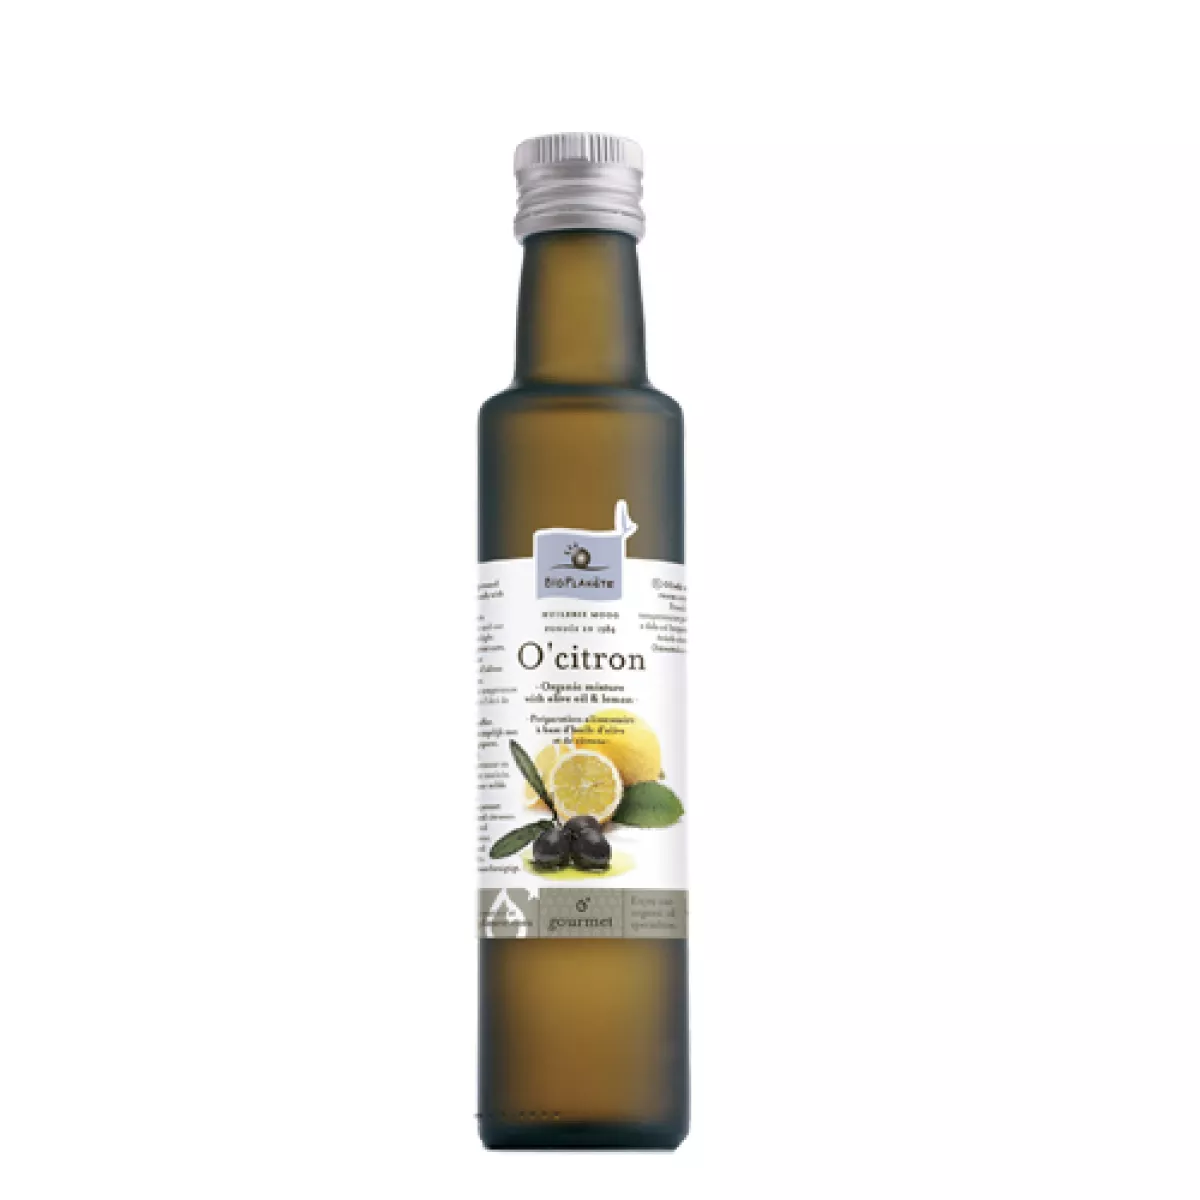 #3 - Oliven citronolie økologisk 250ml